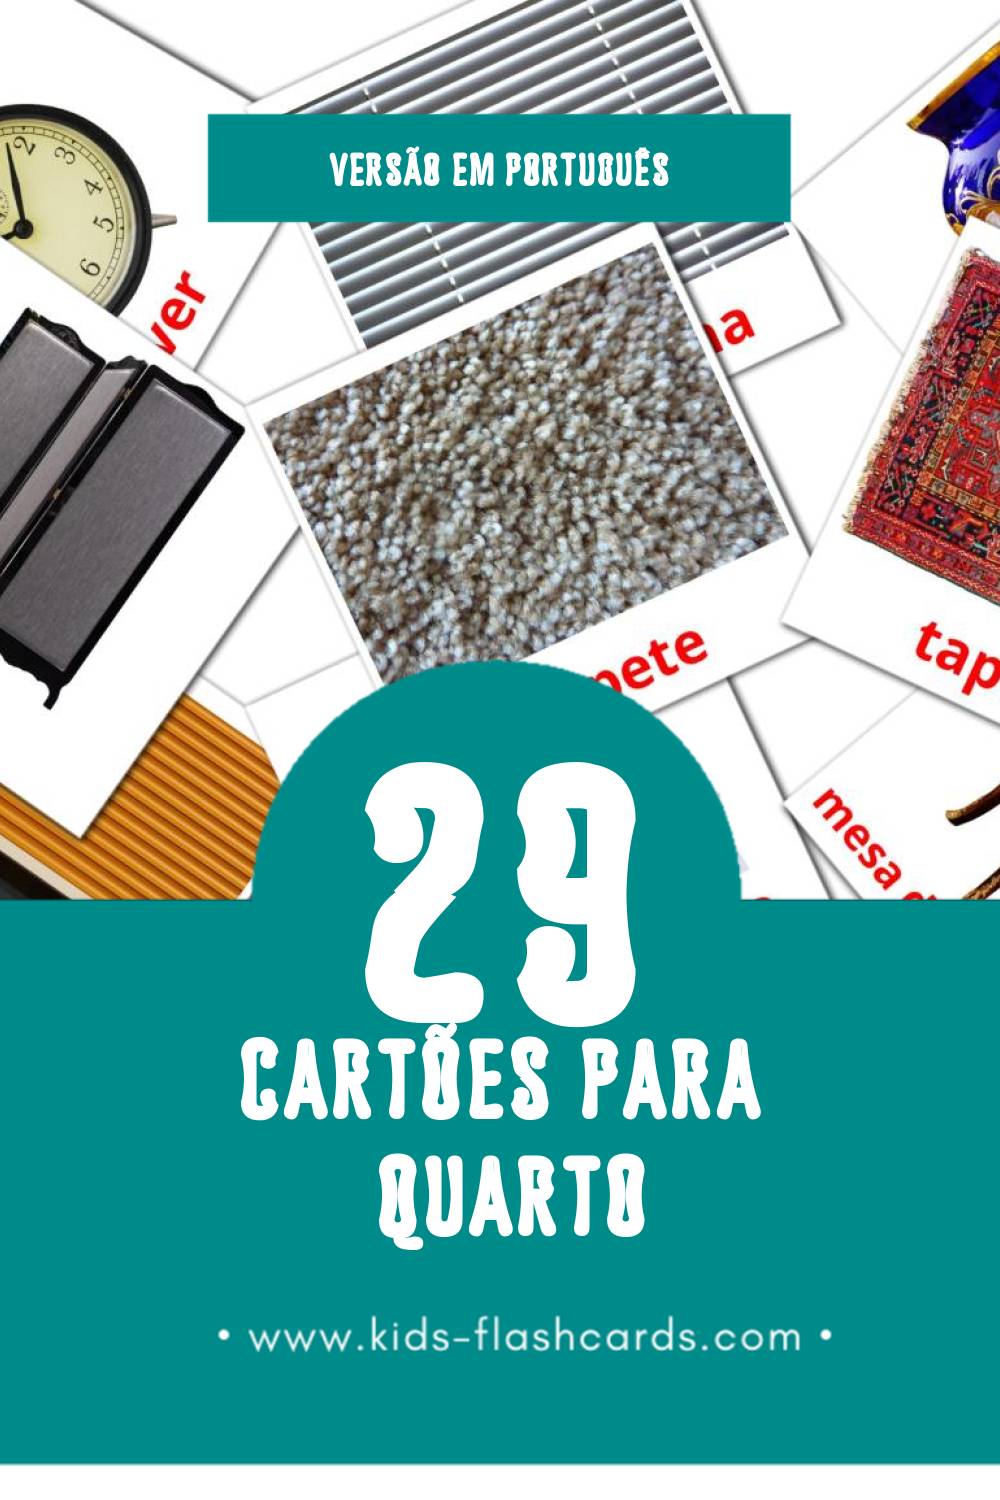 Flashcards de Quarto Visuais para Toddlers (29 cartões em Português)